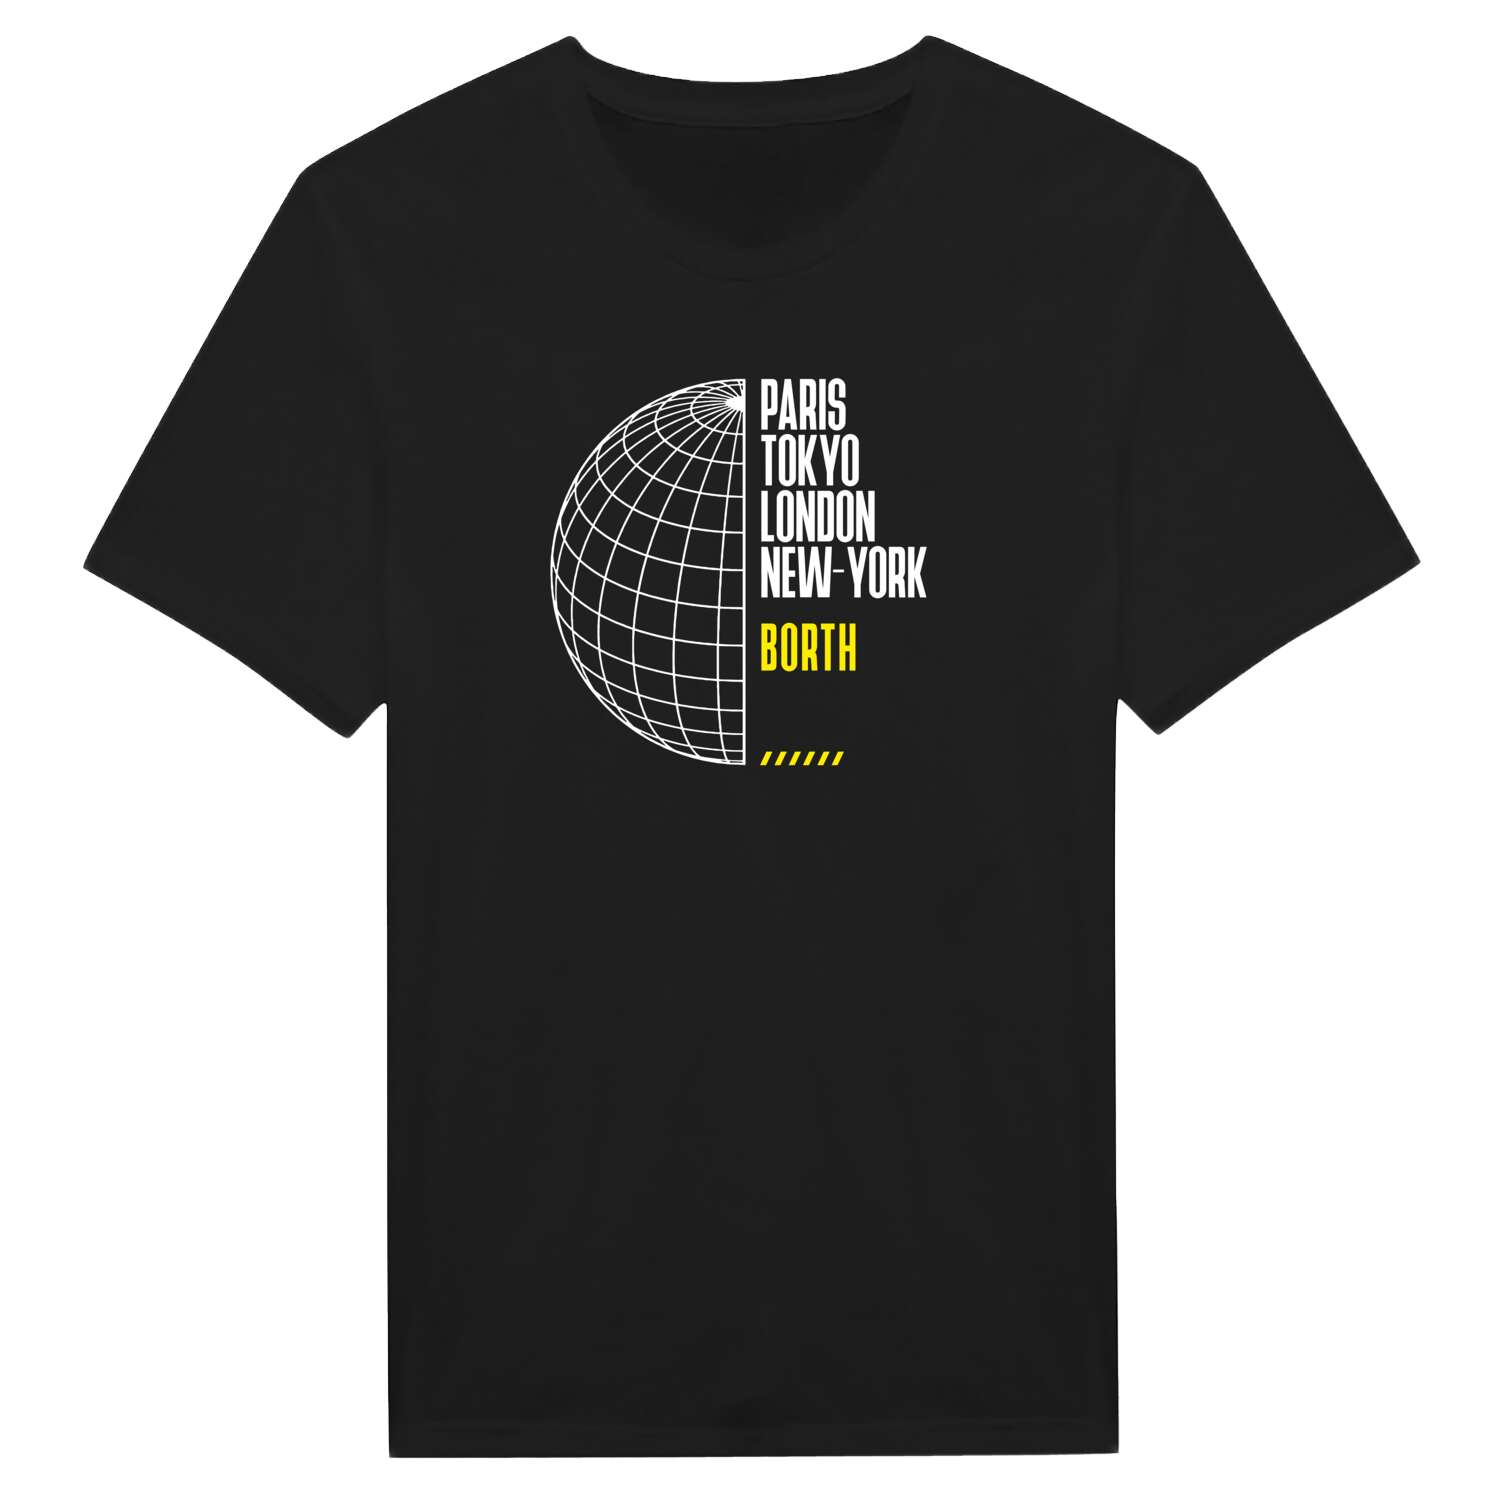 Borth T-Shirt »Paris Tokyo London«